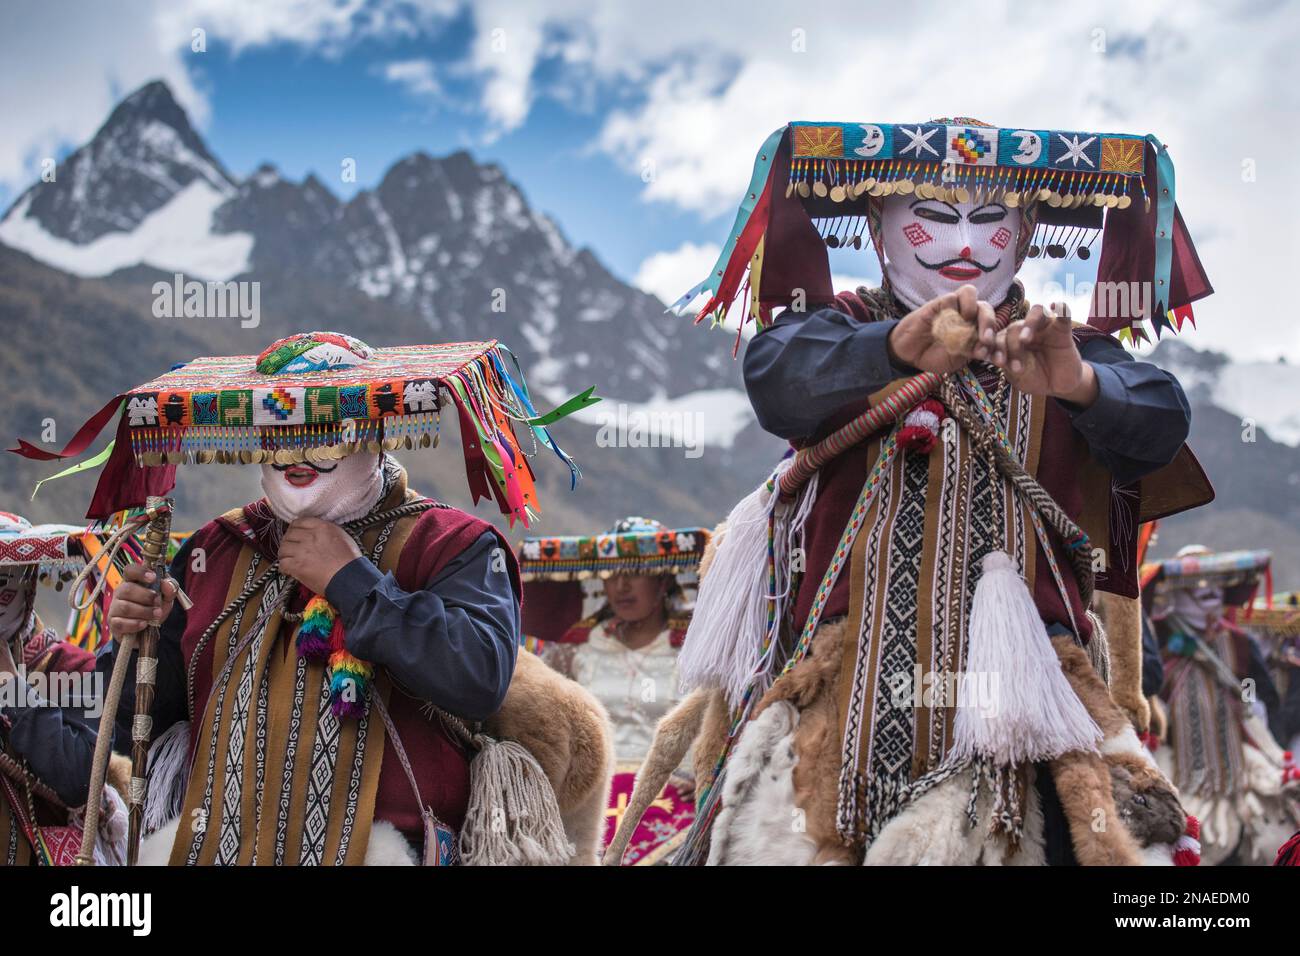 Ukukus in traditional festival costume, part of Inca mythology; Cusco, Peru Stock Photo